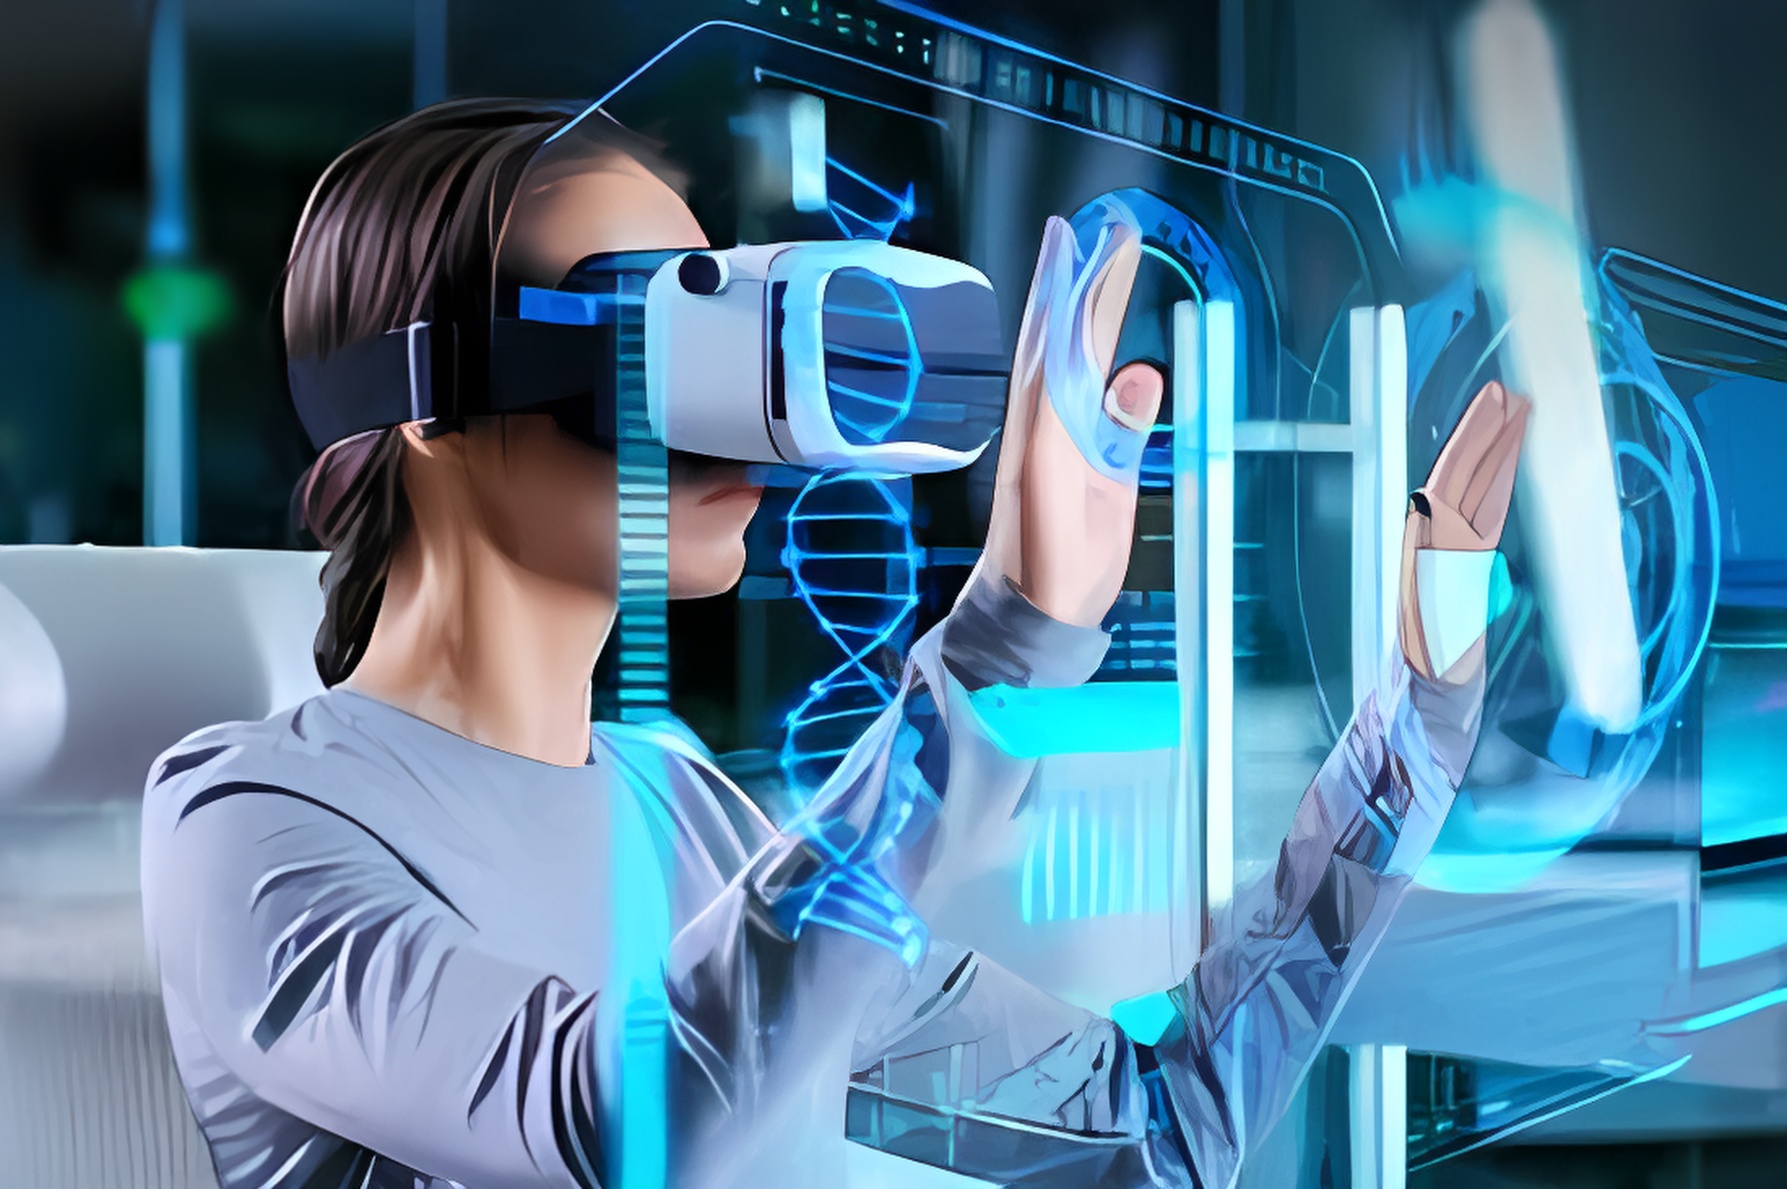 图片展示一位女性佩戴虚拟现实头盔，正用双手触碰虚拟界面，周围是高科技感的蓝色光影效果。